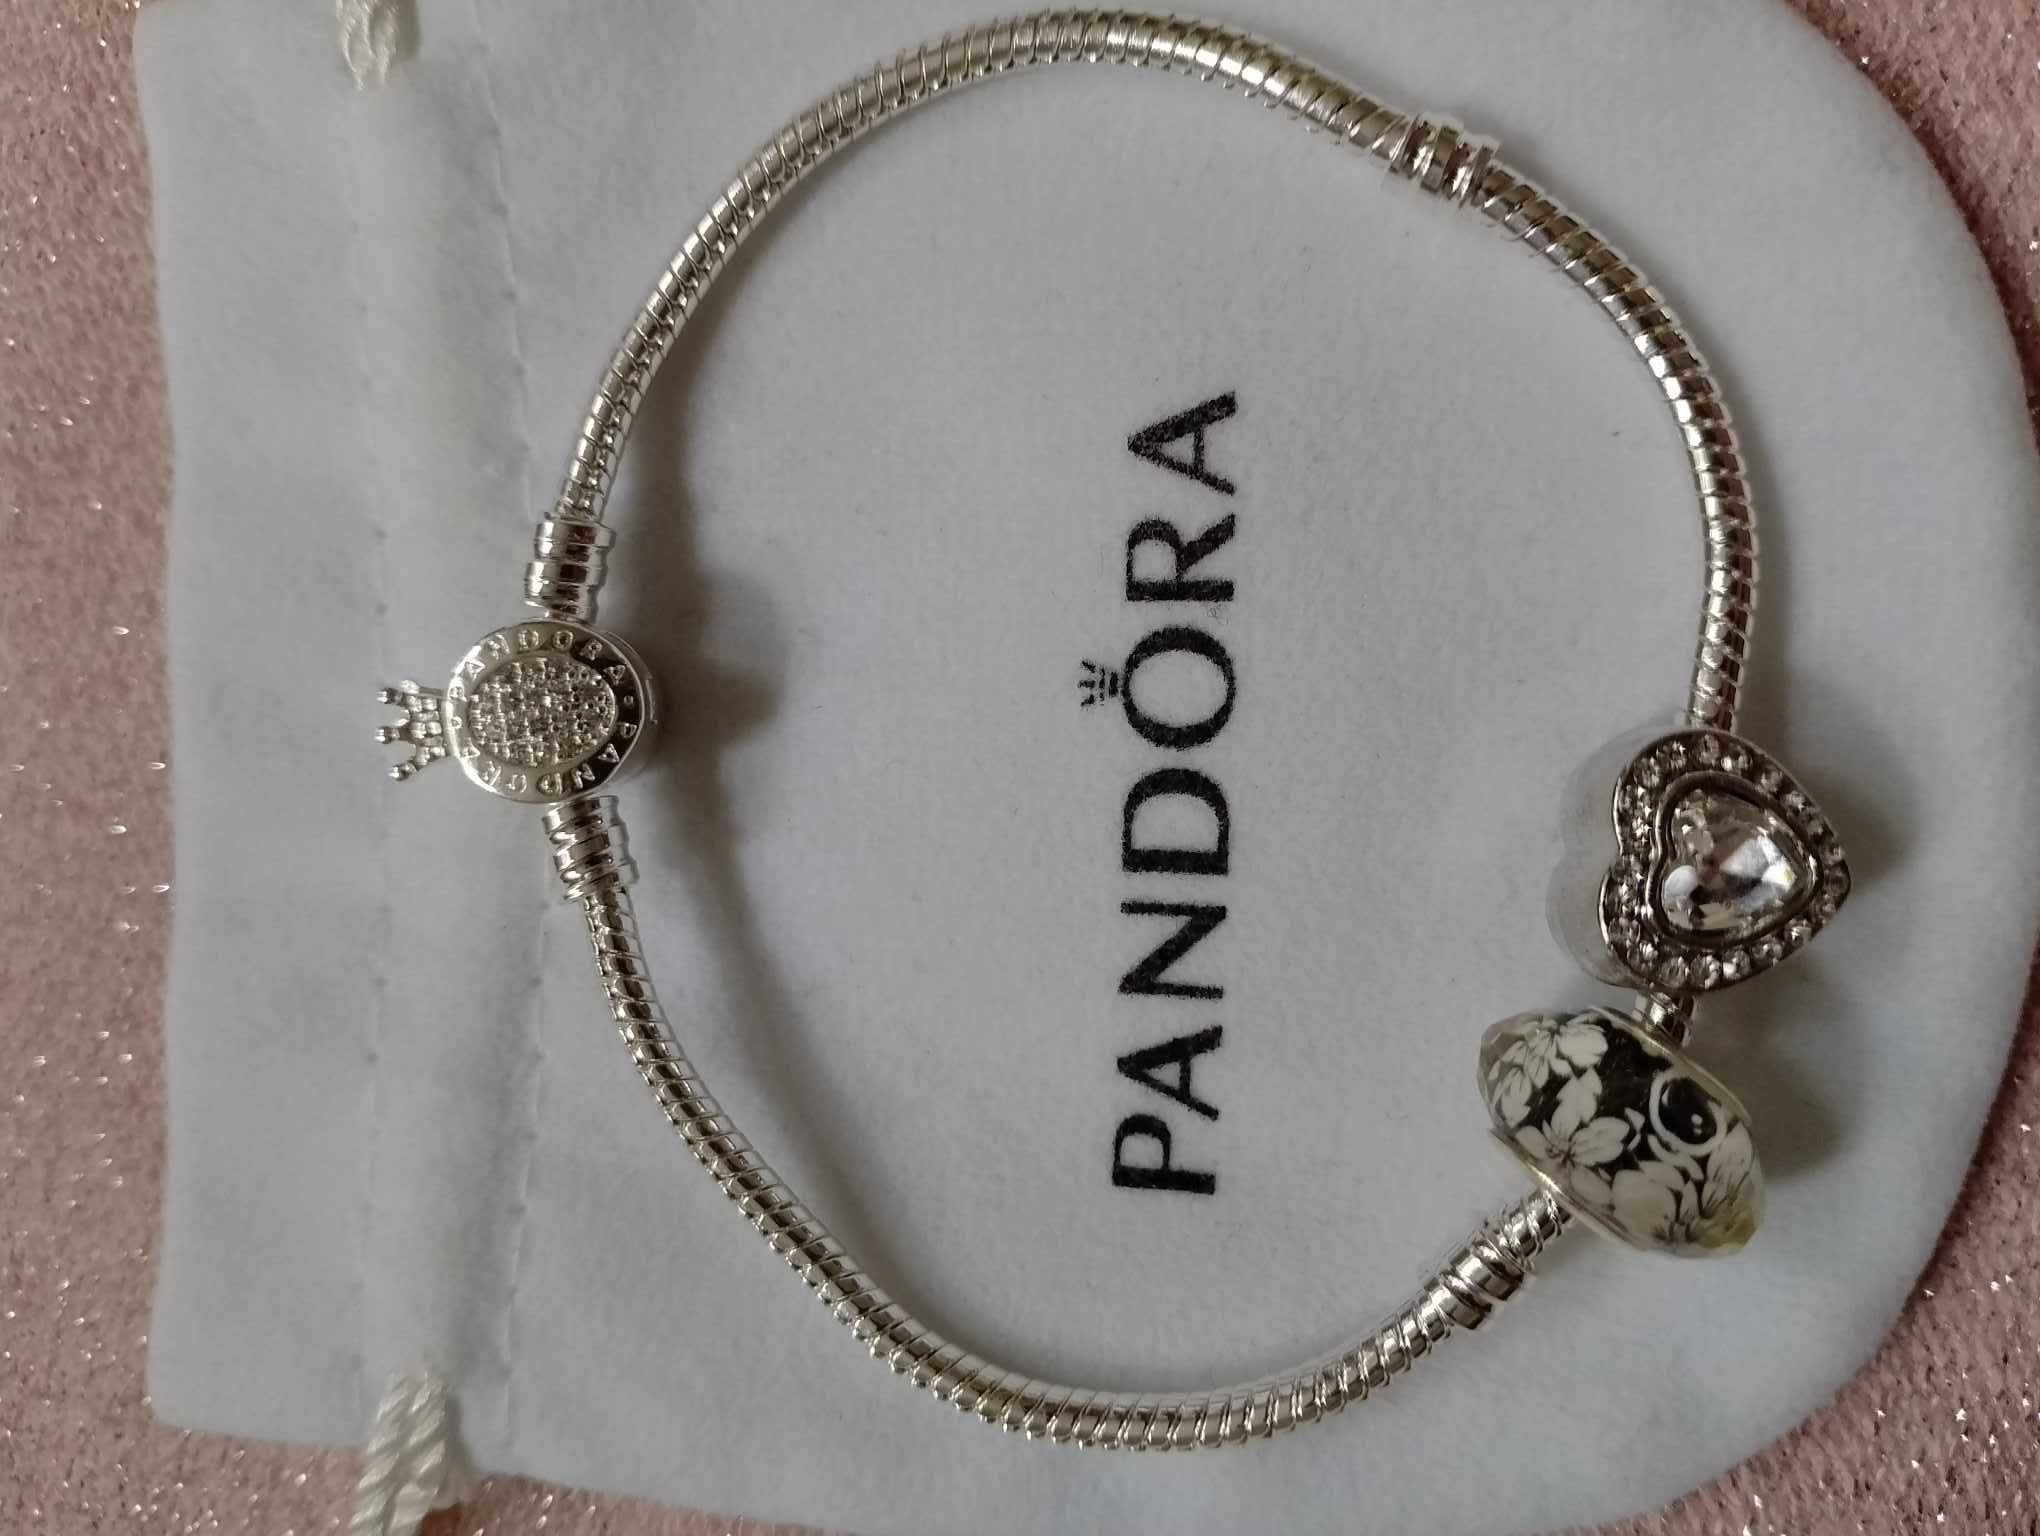 nowa srebrna bransoletka PANDORA + 2 charmsy długość 18 19 20 cm